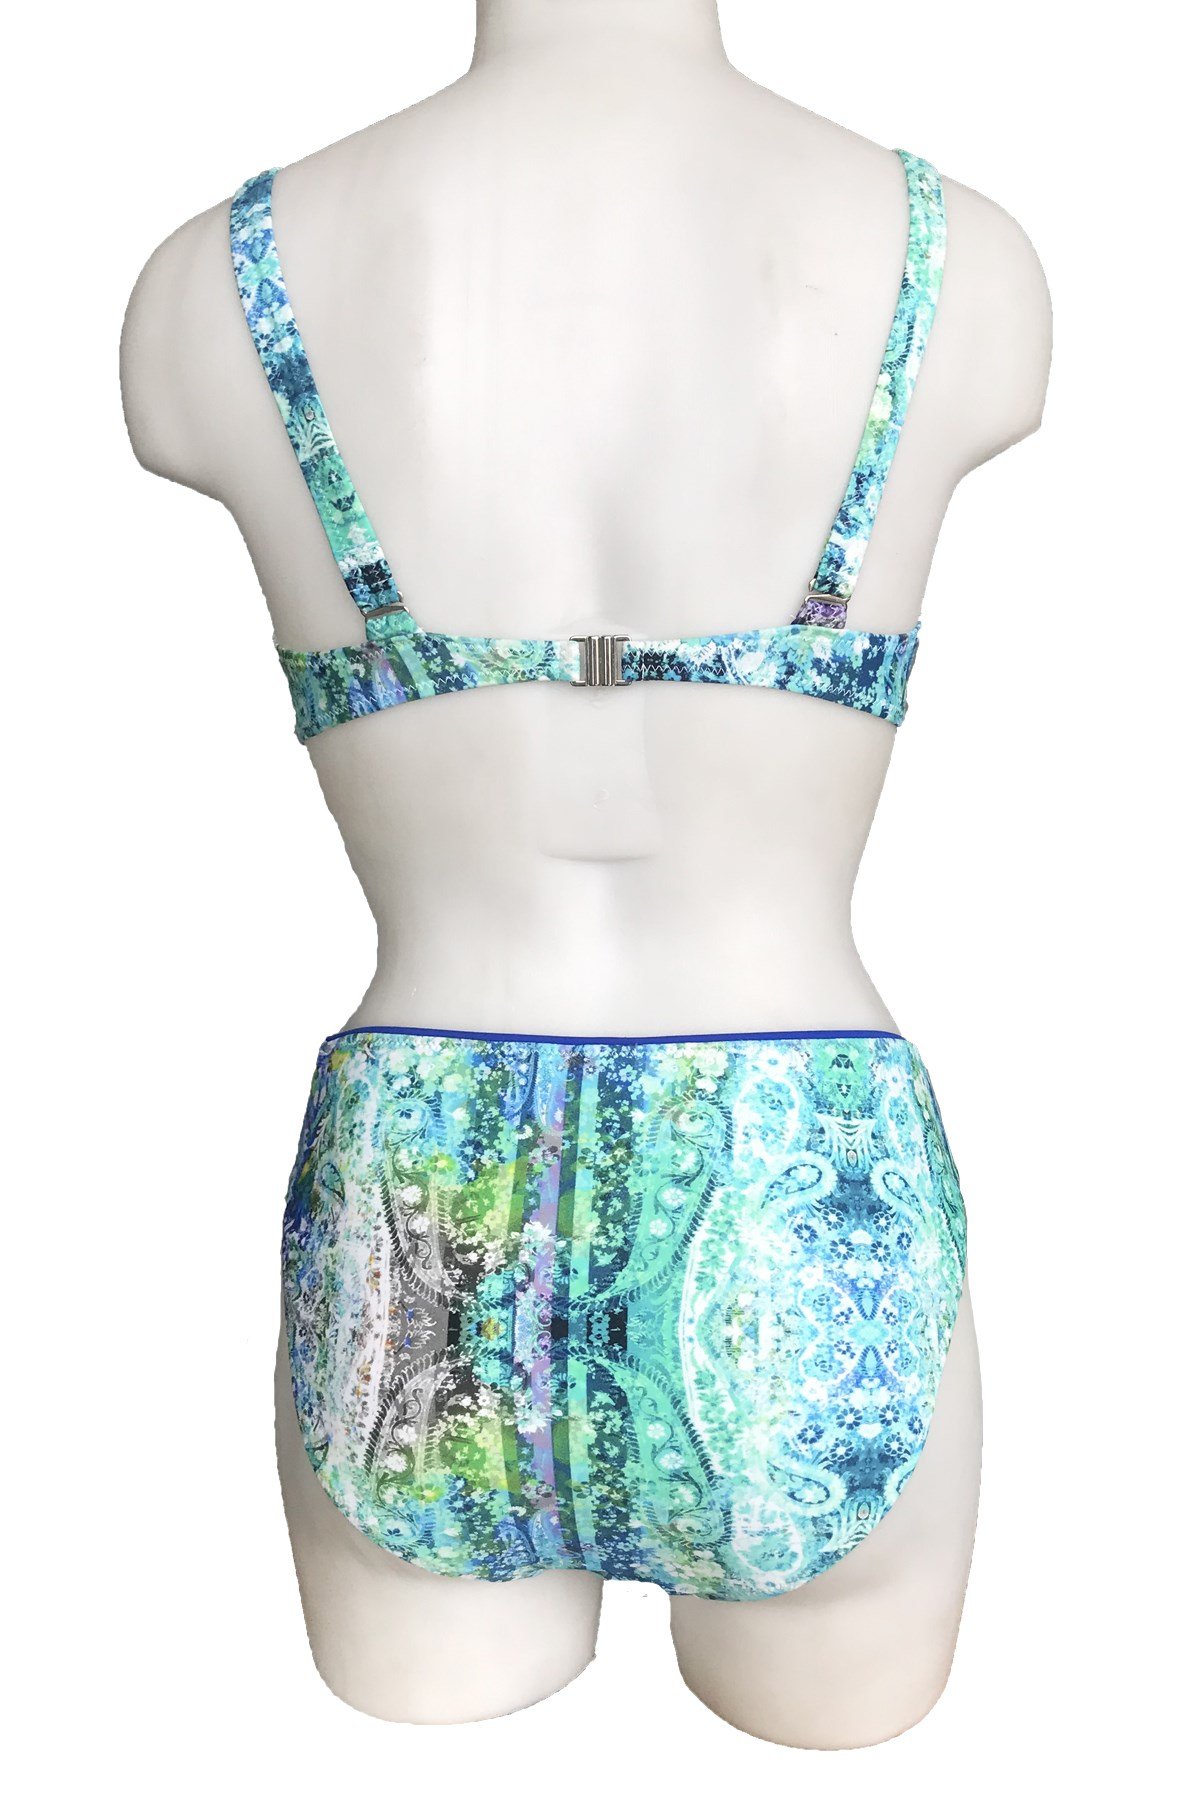 Sunset Balensiz Toparlayıcı Bikini Yeni Sezon! Moda! Ürünler Rakipsiz  Fiyatlar İç Giyim, Ev Tekstili, Kozmetik, Çeyiz ve Daha Fazlası |  yoncatoptan.com